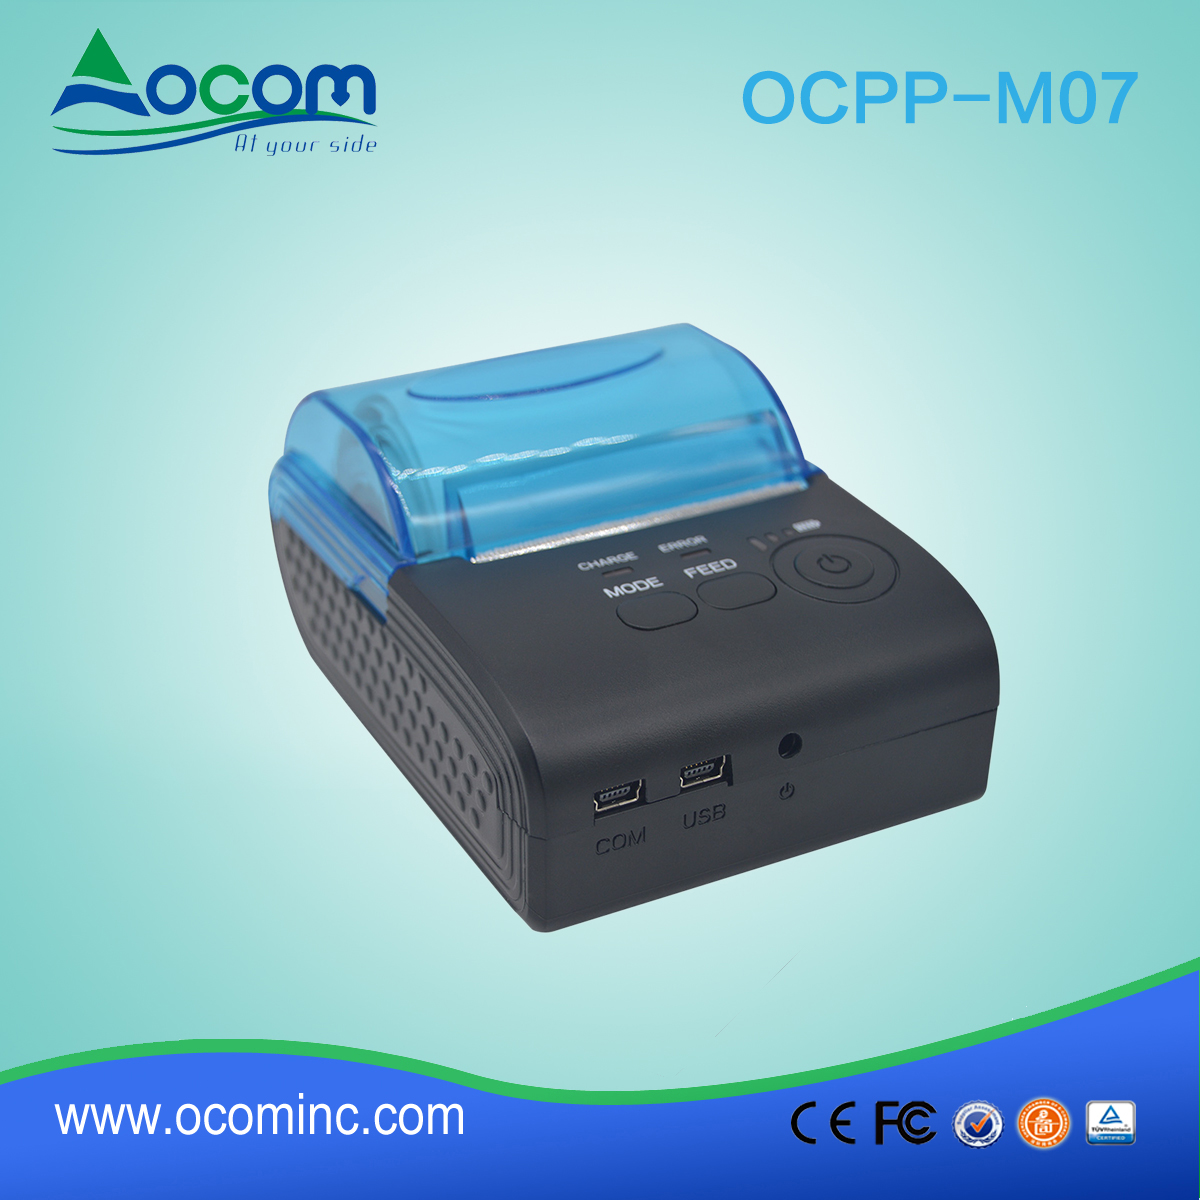 OCPP-M07 2017出租车便携式无线蓝牙打印机